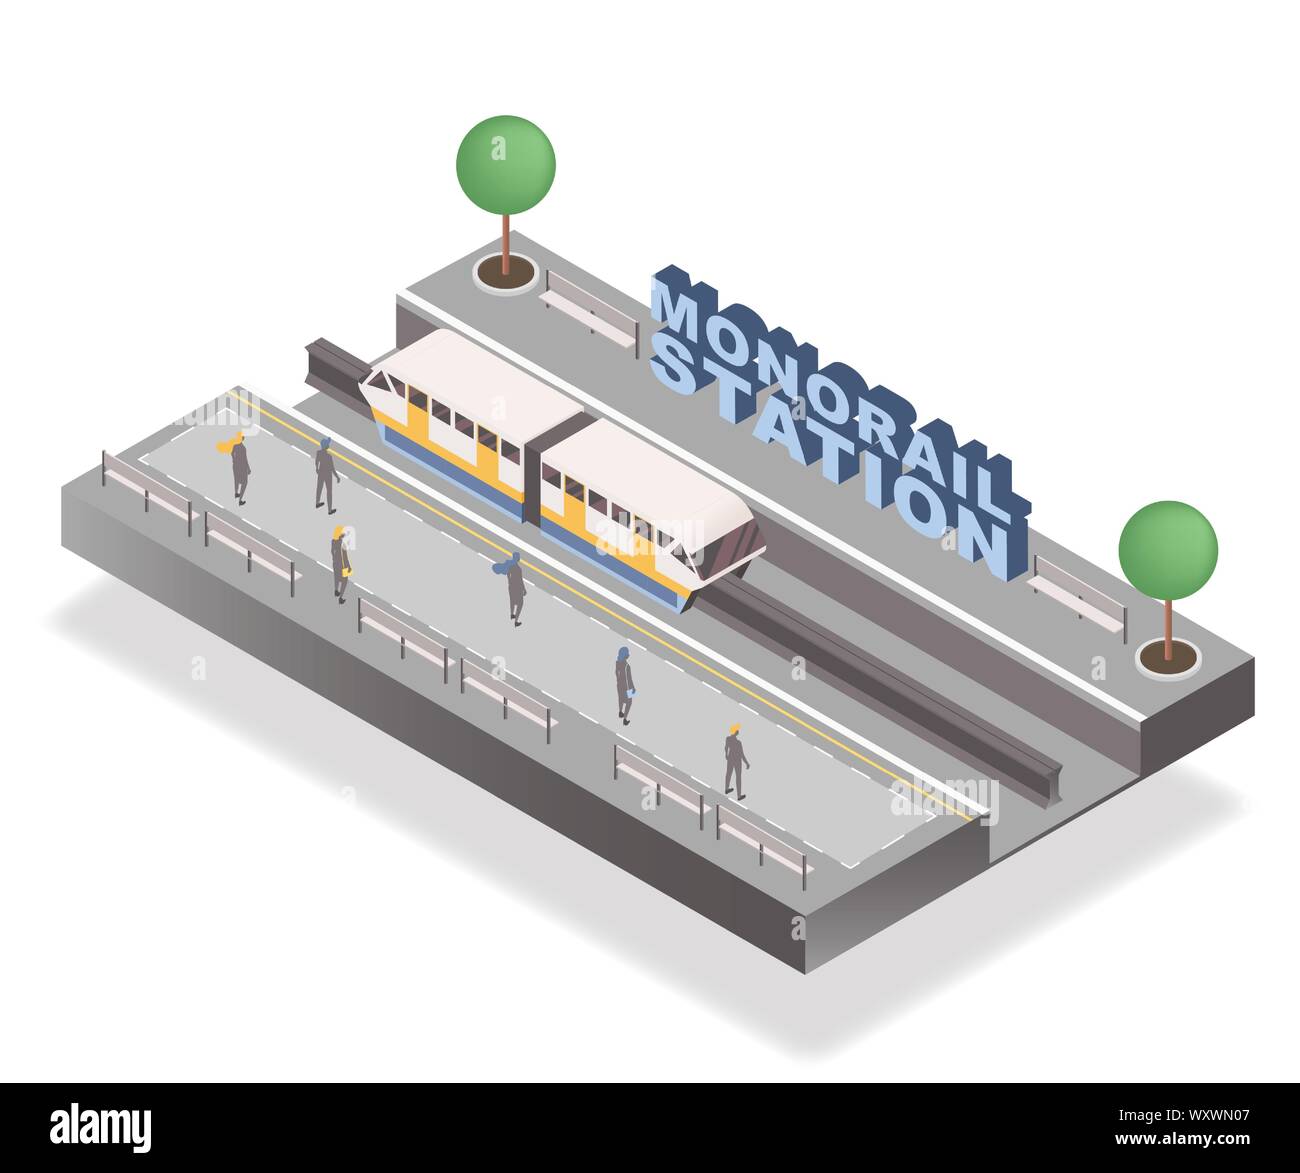 La station de monorail bannière isométrique modèle vectoriel. Les passagers qui attendent sur la plate-forme, tramway et arbres 3D illustration avec lettrage. L'élément de l'architecture urbaine, les transports publics, ville travel concept Illustration de Vecteur